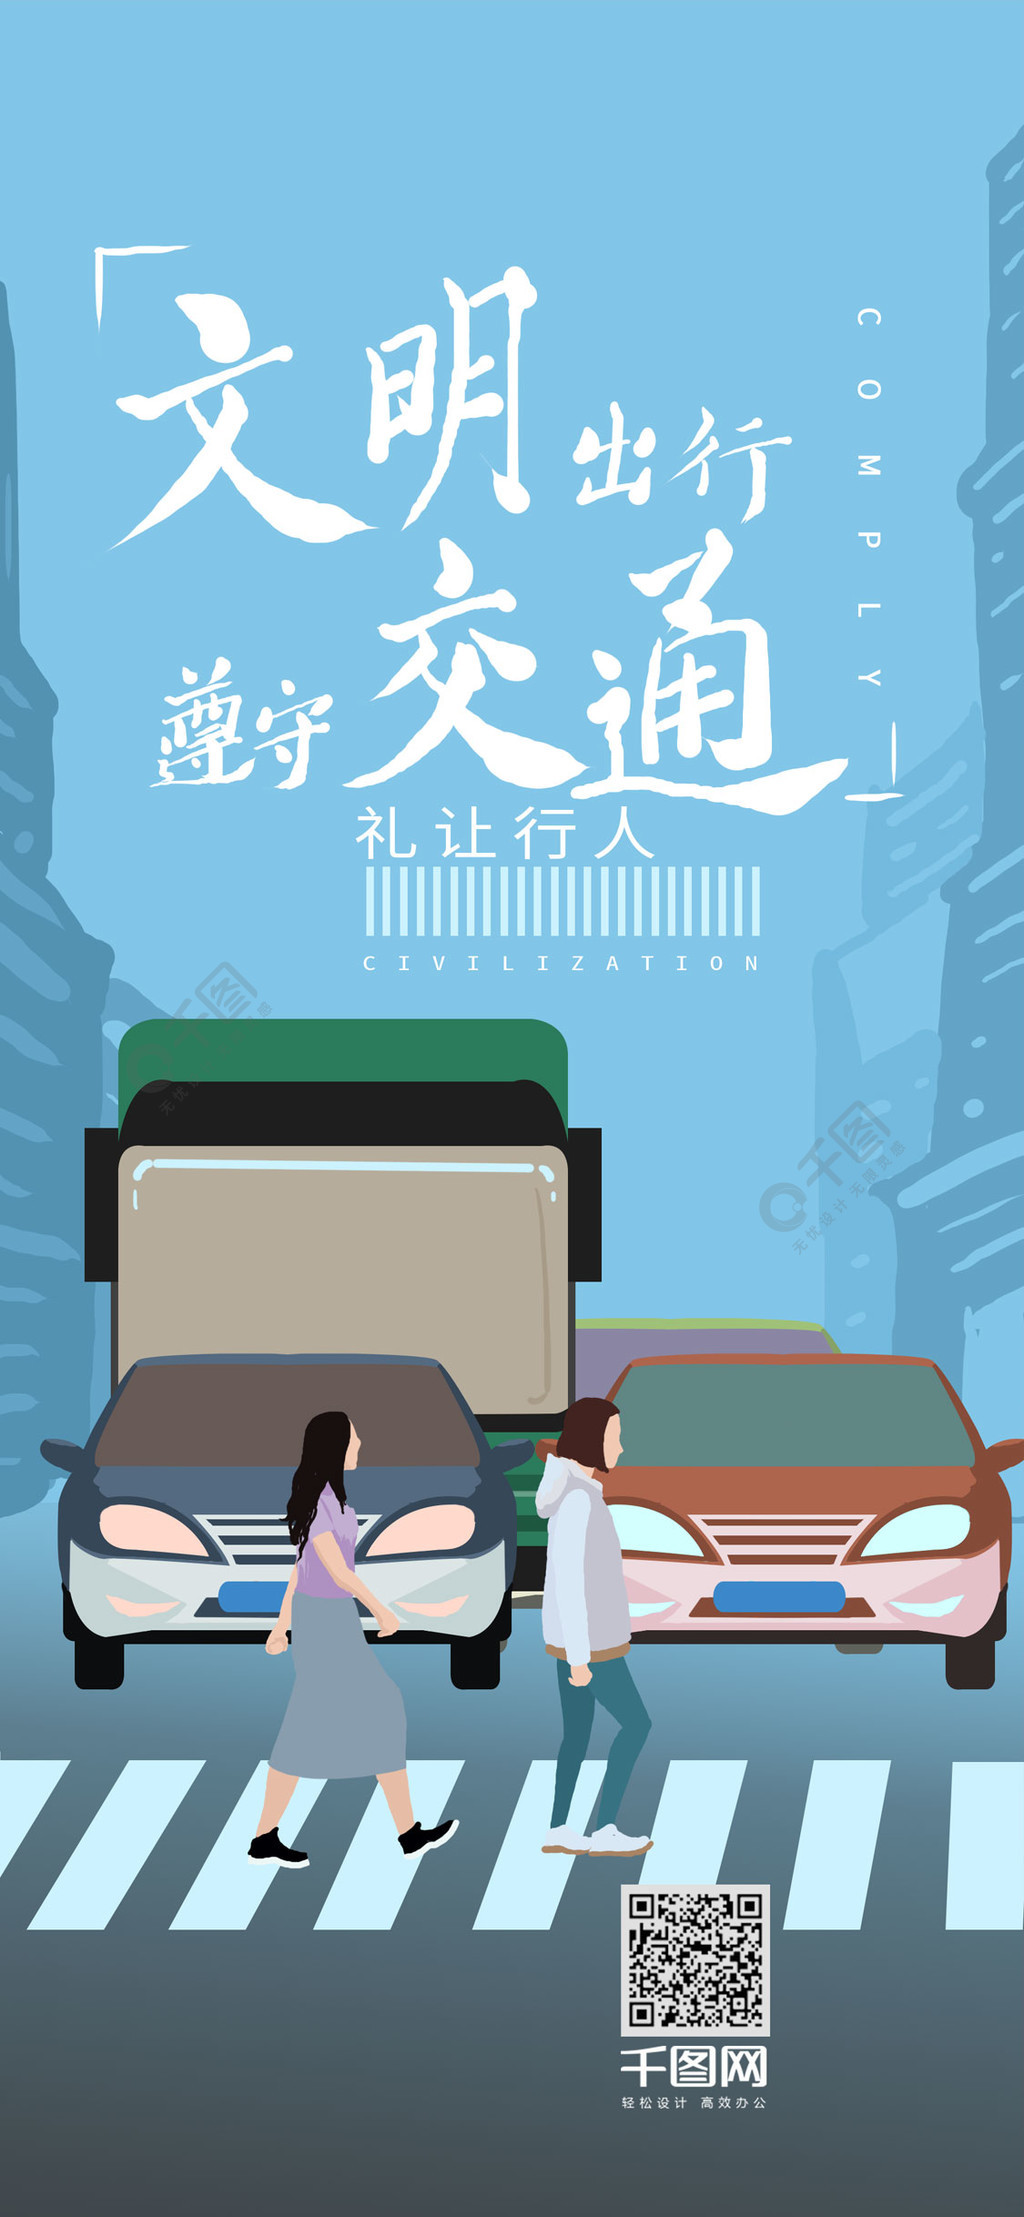 文明出行遵守交通禁止酒驾手机插画壁纸配图3年前发布